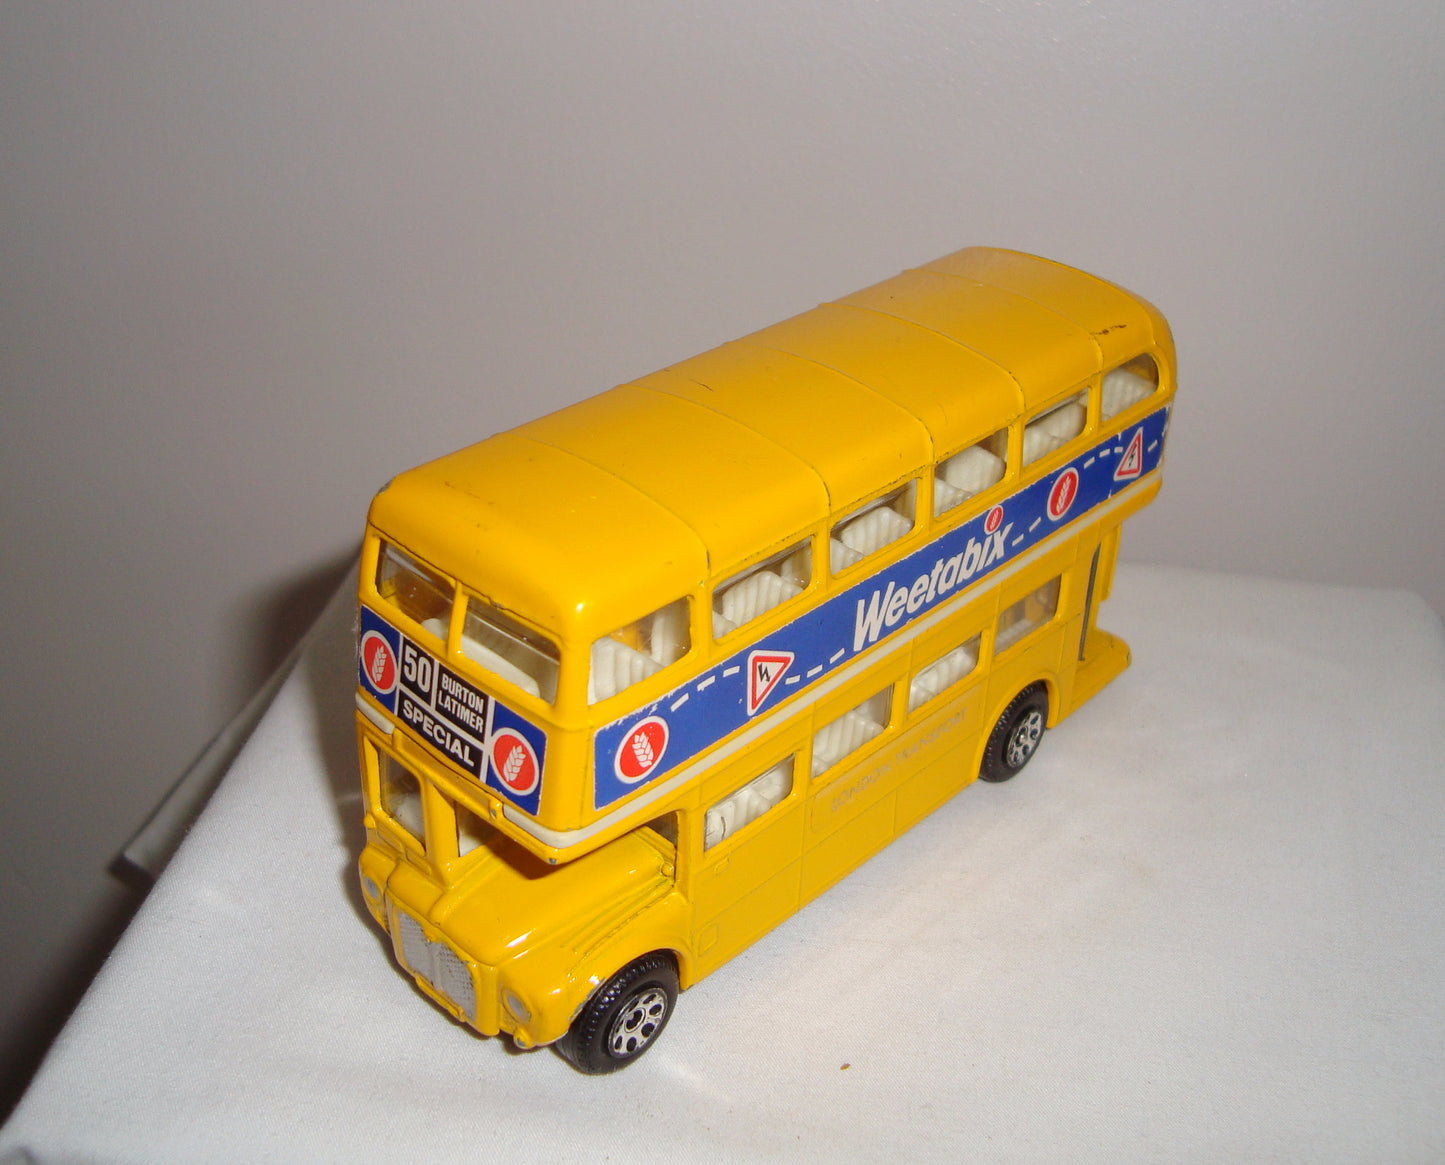 Vintage Corgi London Routemaster Bus Branded Weetabix